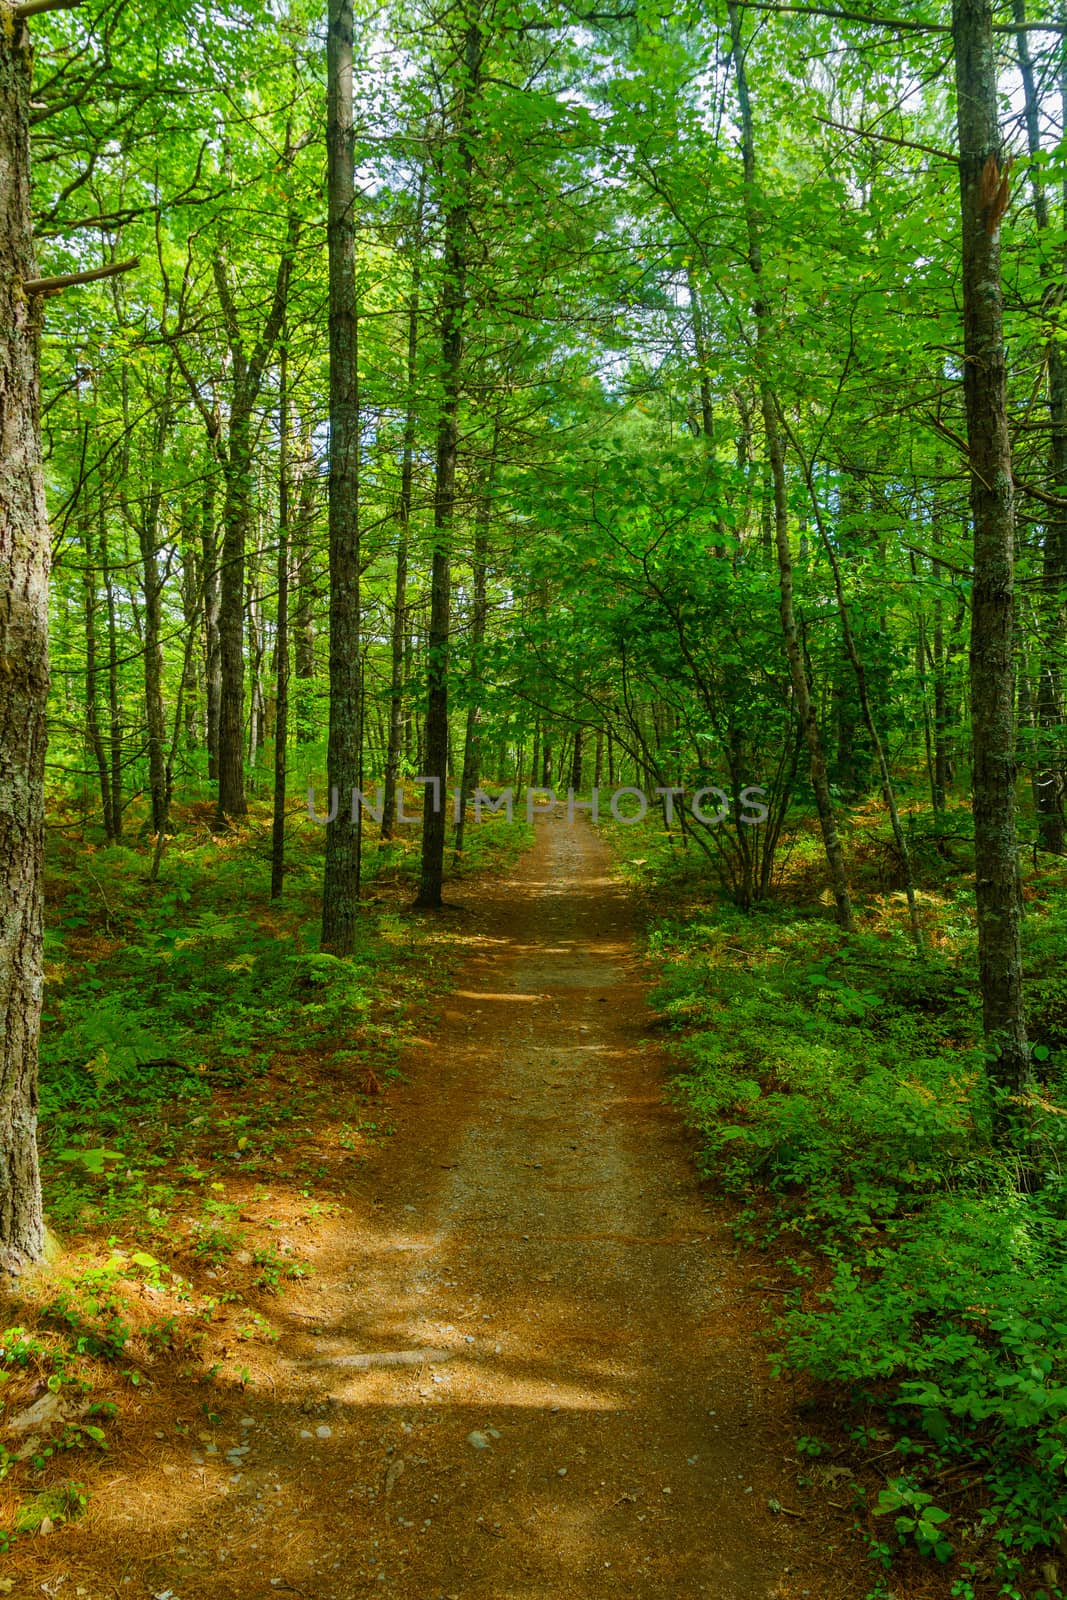 Footpath in a forest, in Kejimkujik National Park, Nova Scotia, Canada